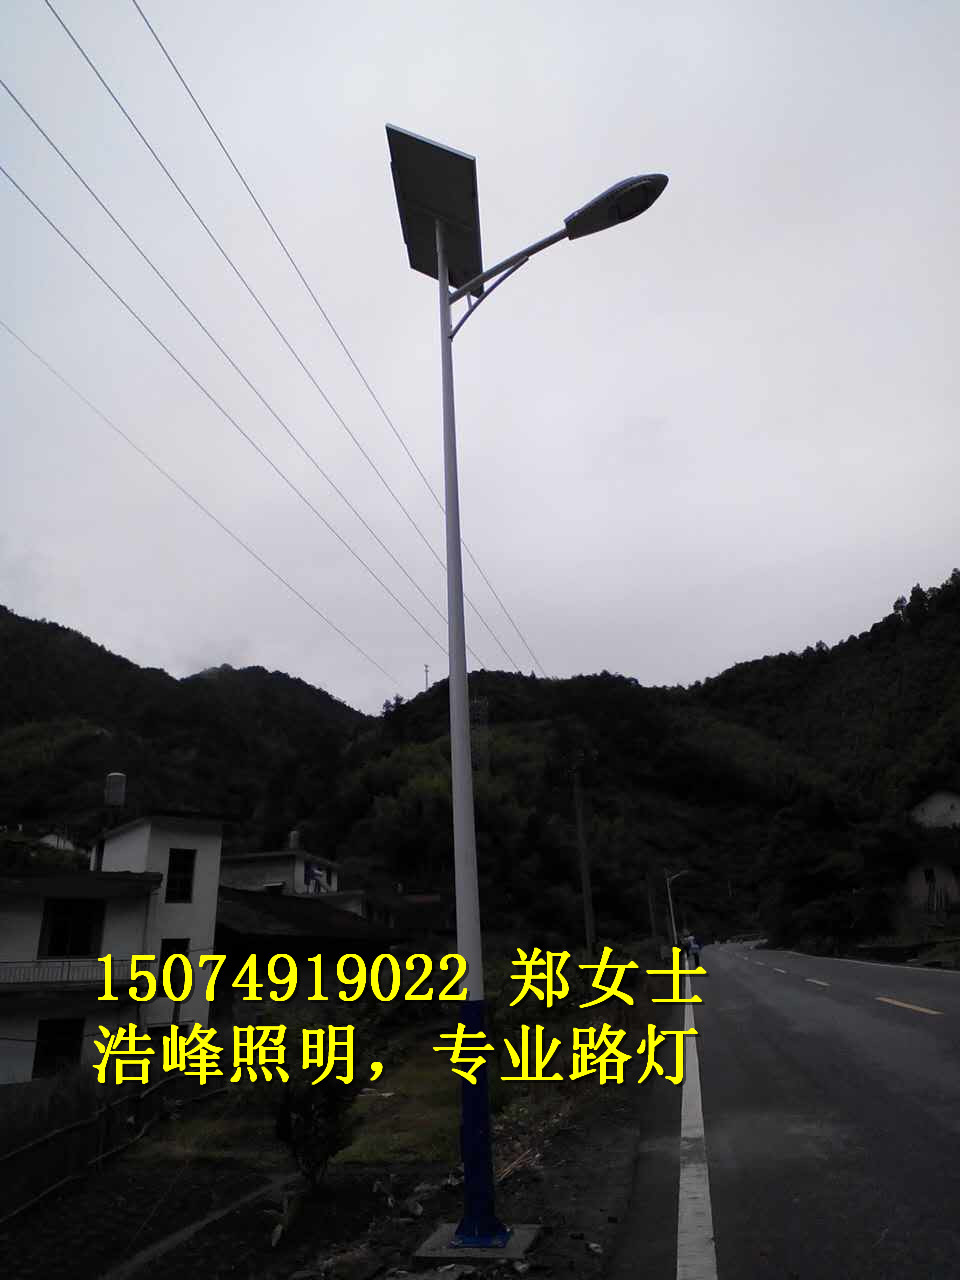 贵州龙里/长顺太阳能LED路灯批发 长顺LED路灯厂家批发价格表